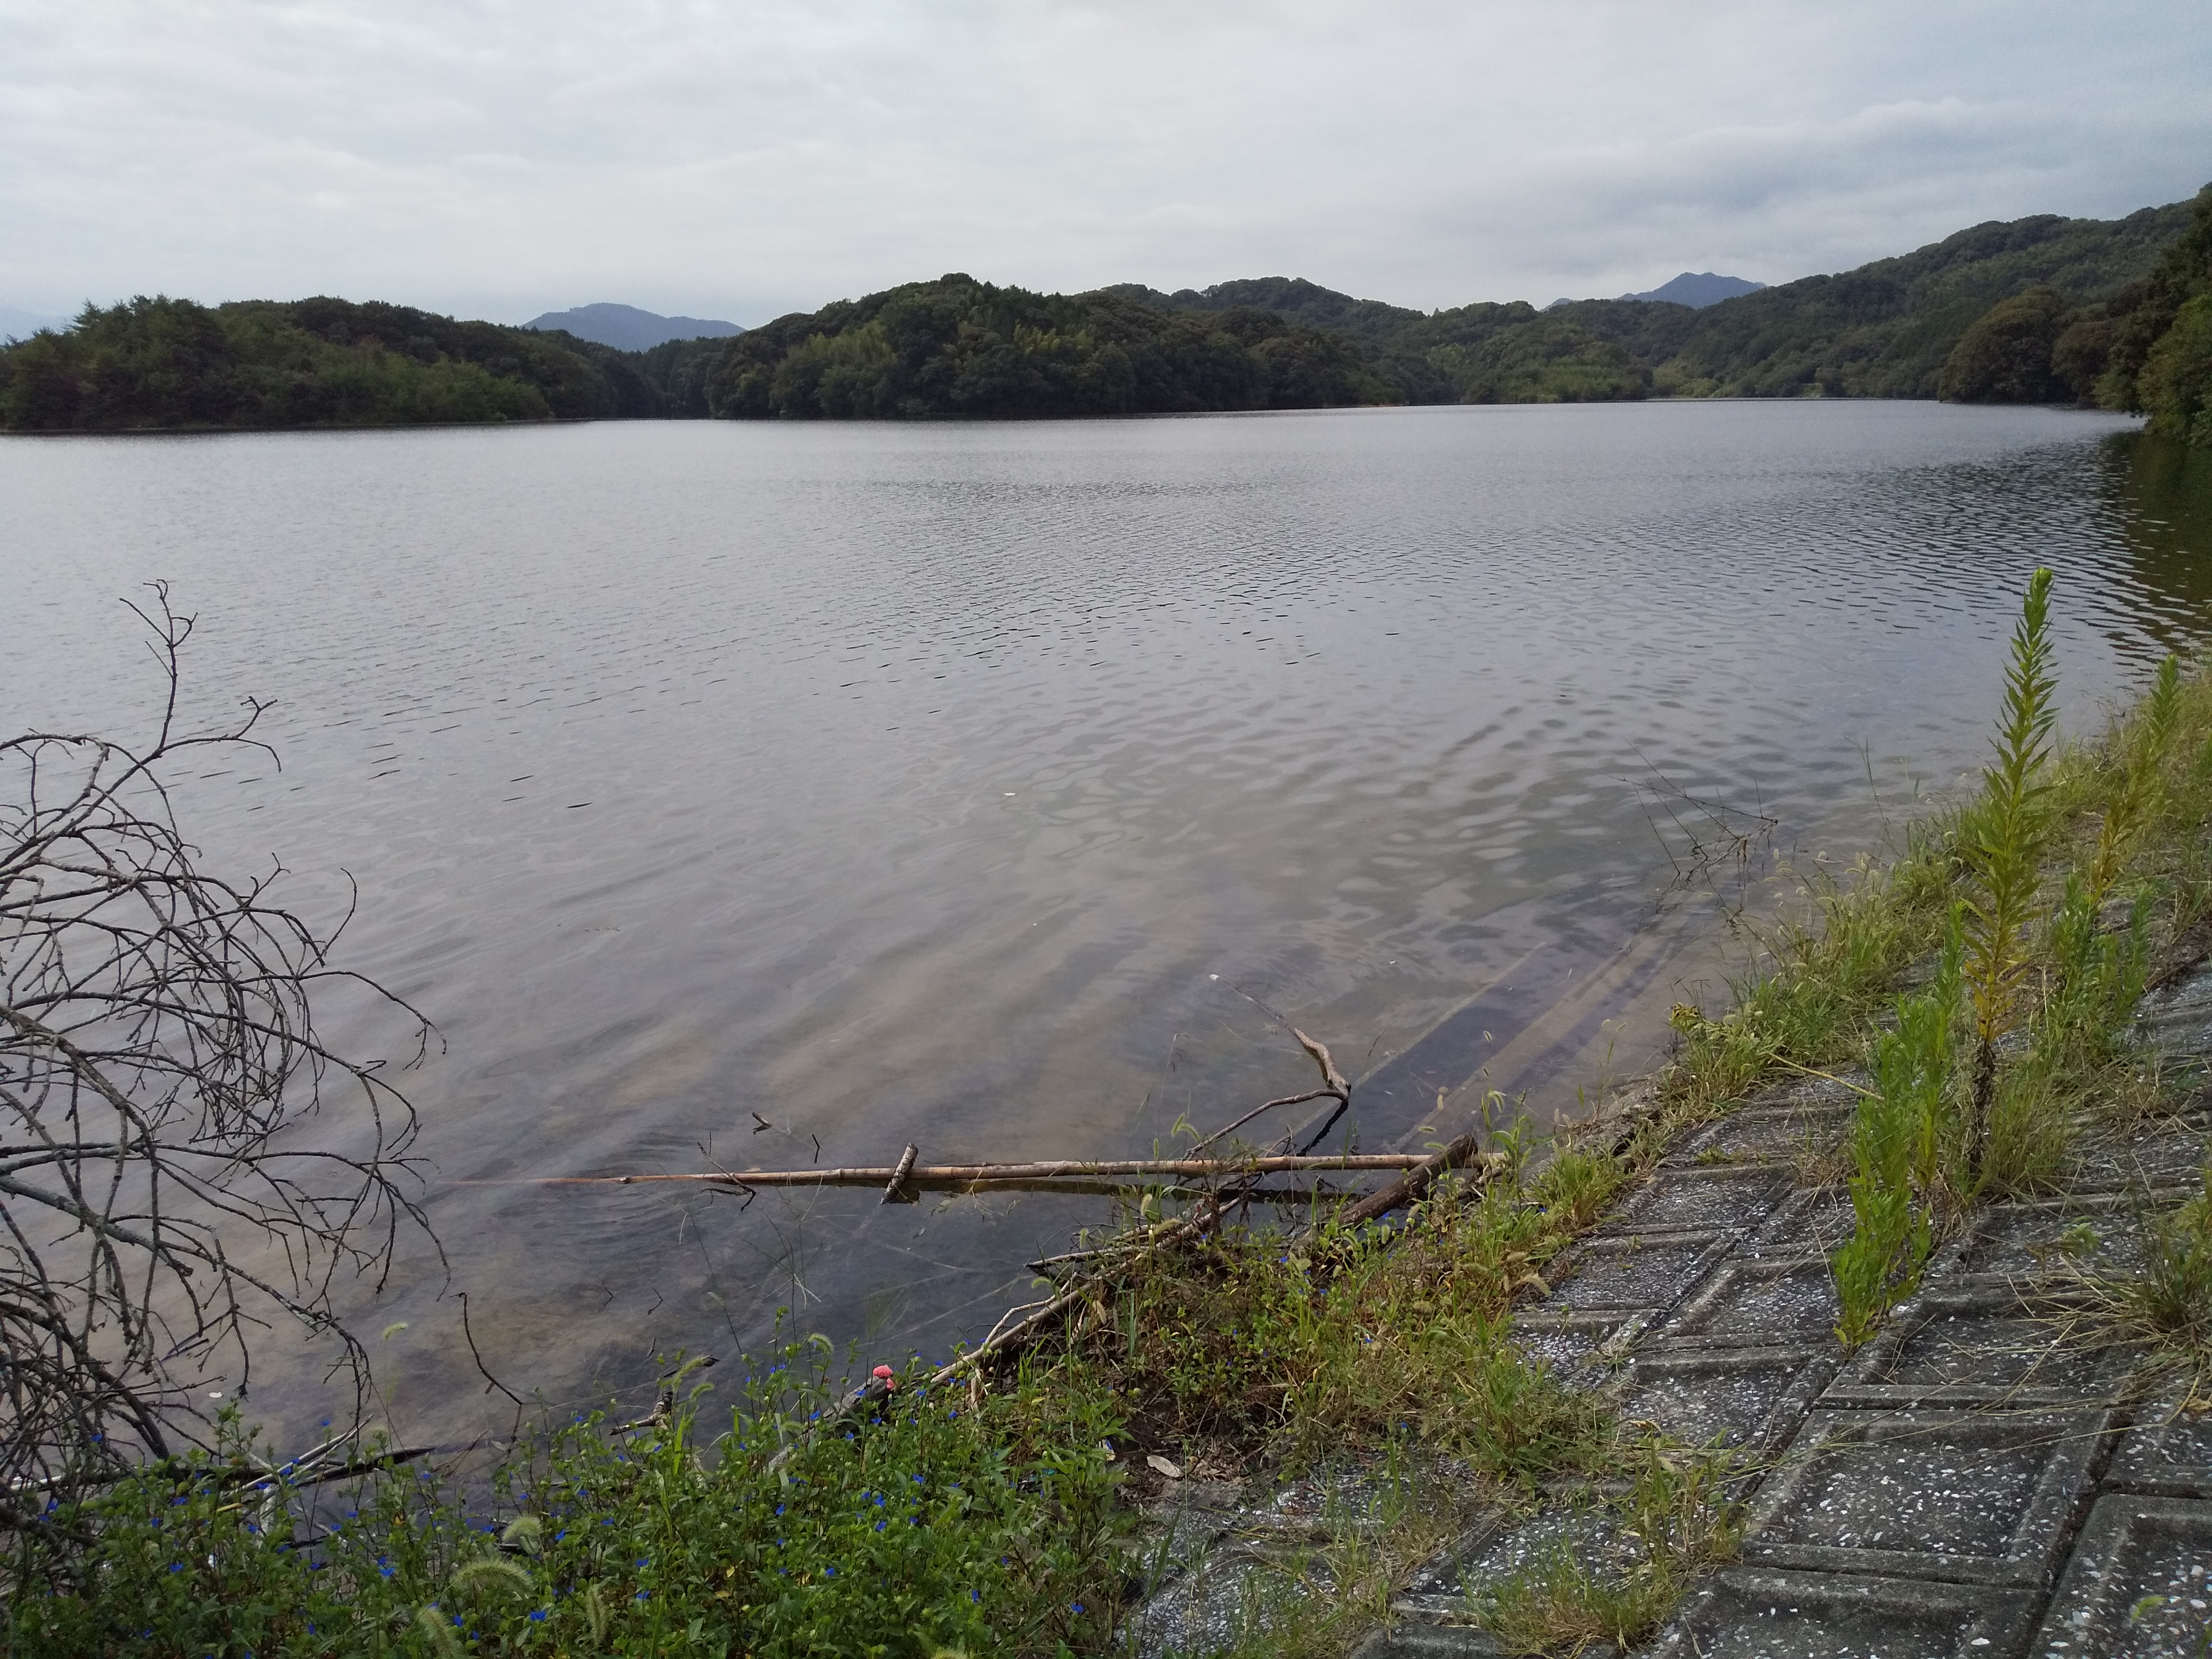 久保白ダム お勧めポイント 6選 バス釣りはよかよ 福岡のピーナッツブログ 楽天ブログ